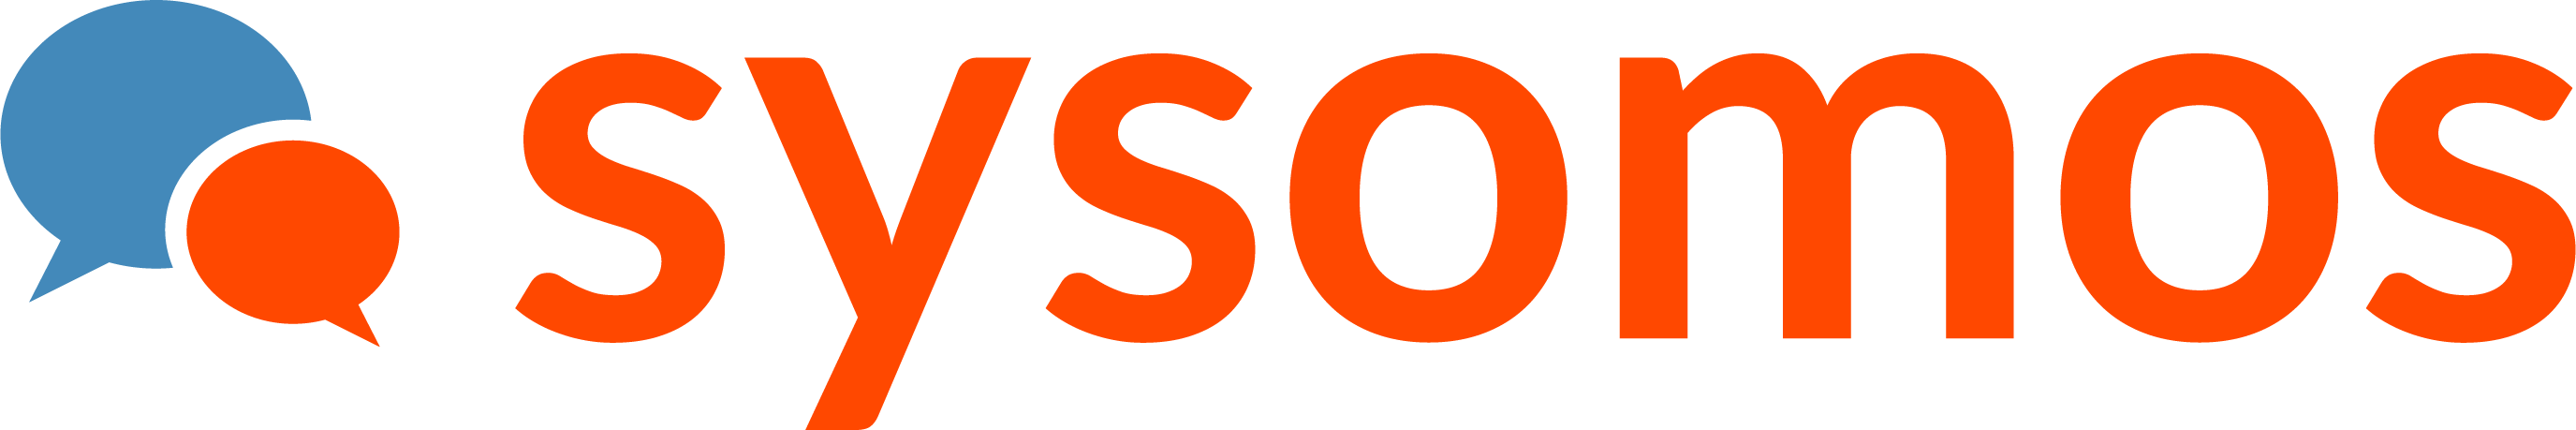 Sysomos Logo png